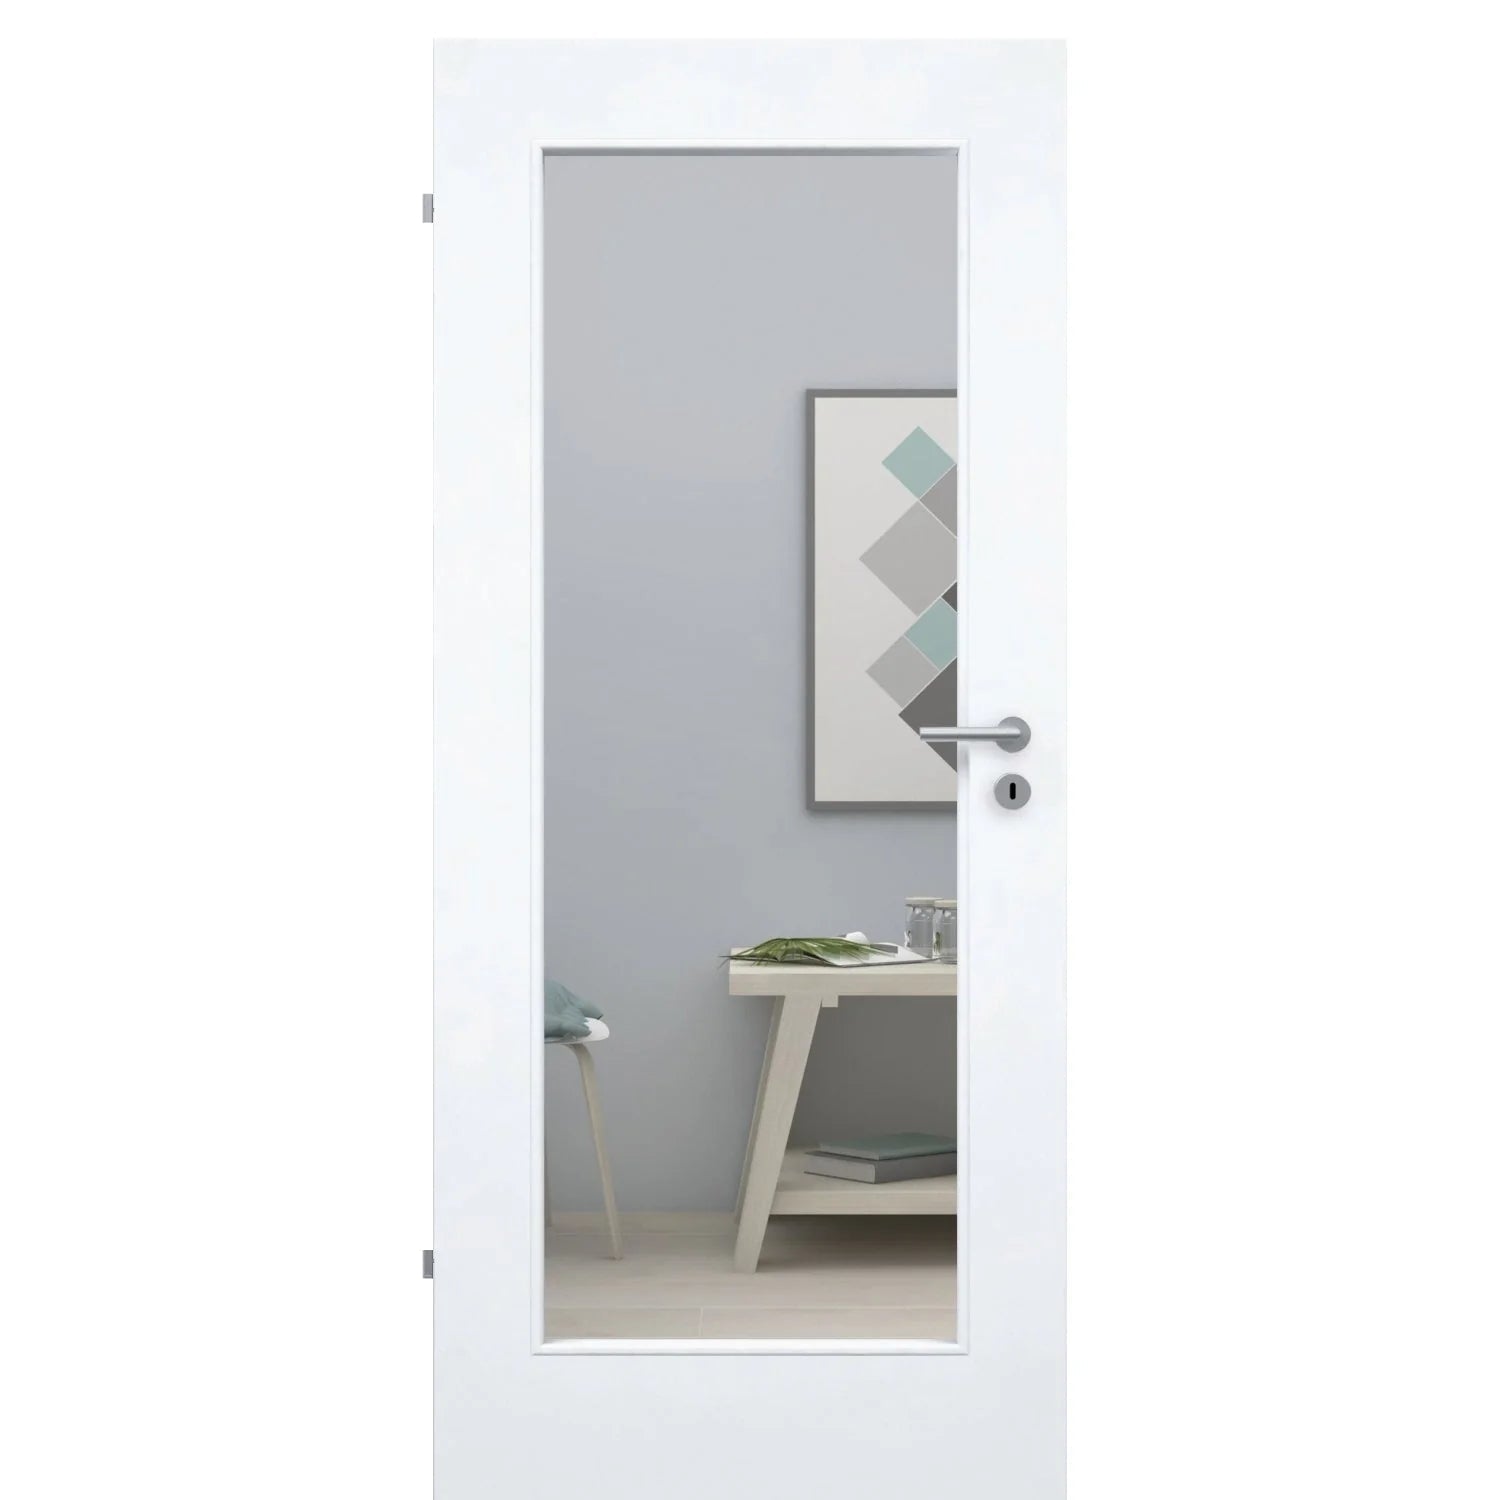 Zimmertür brillant-weiß Stiltür mit 1 Kassette und Lichtausschnitt Designkante - Modell Stiltür M13LA